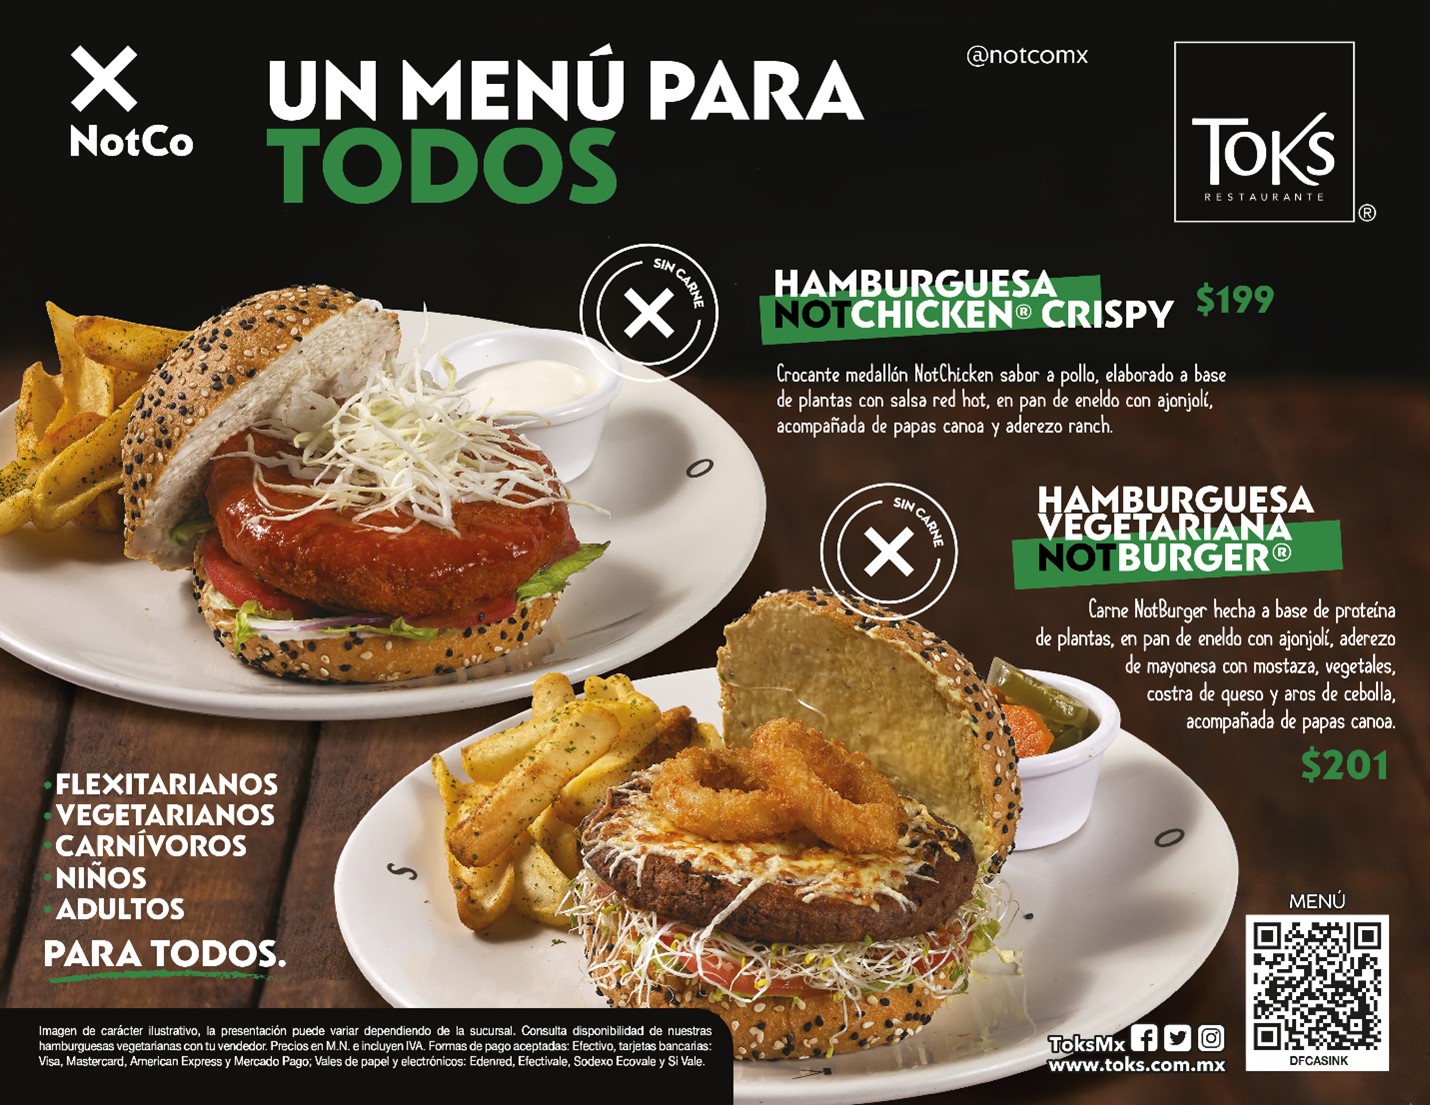 Toks en alianza con NotCo, lanza un menú paratodos hecho a base de plantas  - Godinez Gourmet